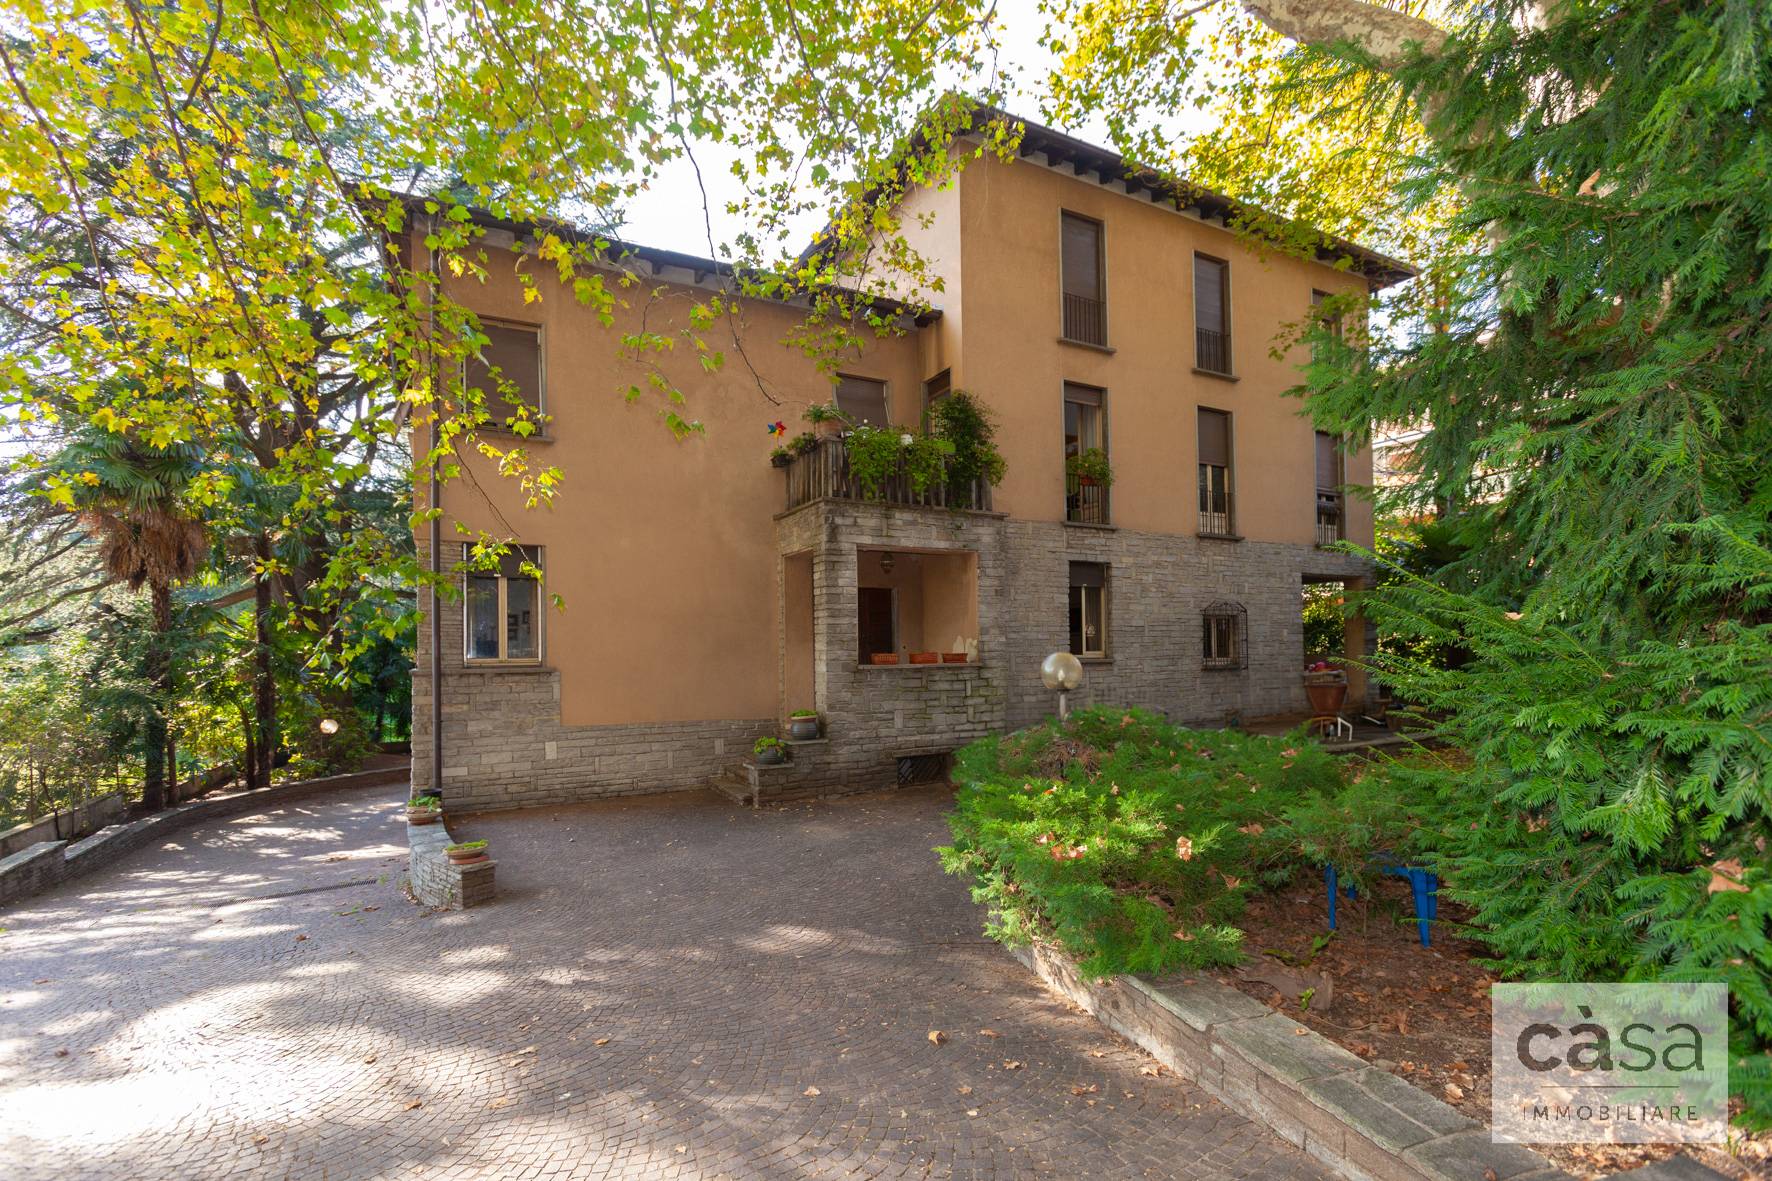 Villa in vendita a Varese, 10 locali, prezzo € 630.000 | PortaleAgenzieImmobiliari.it